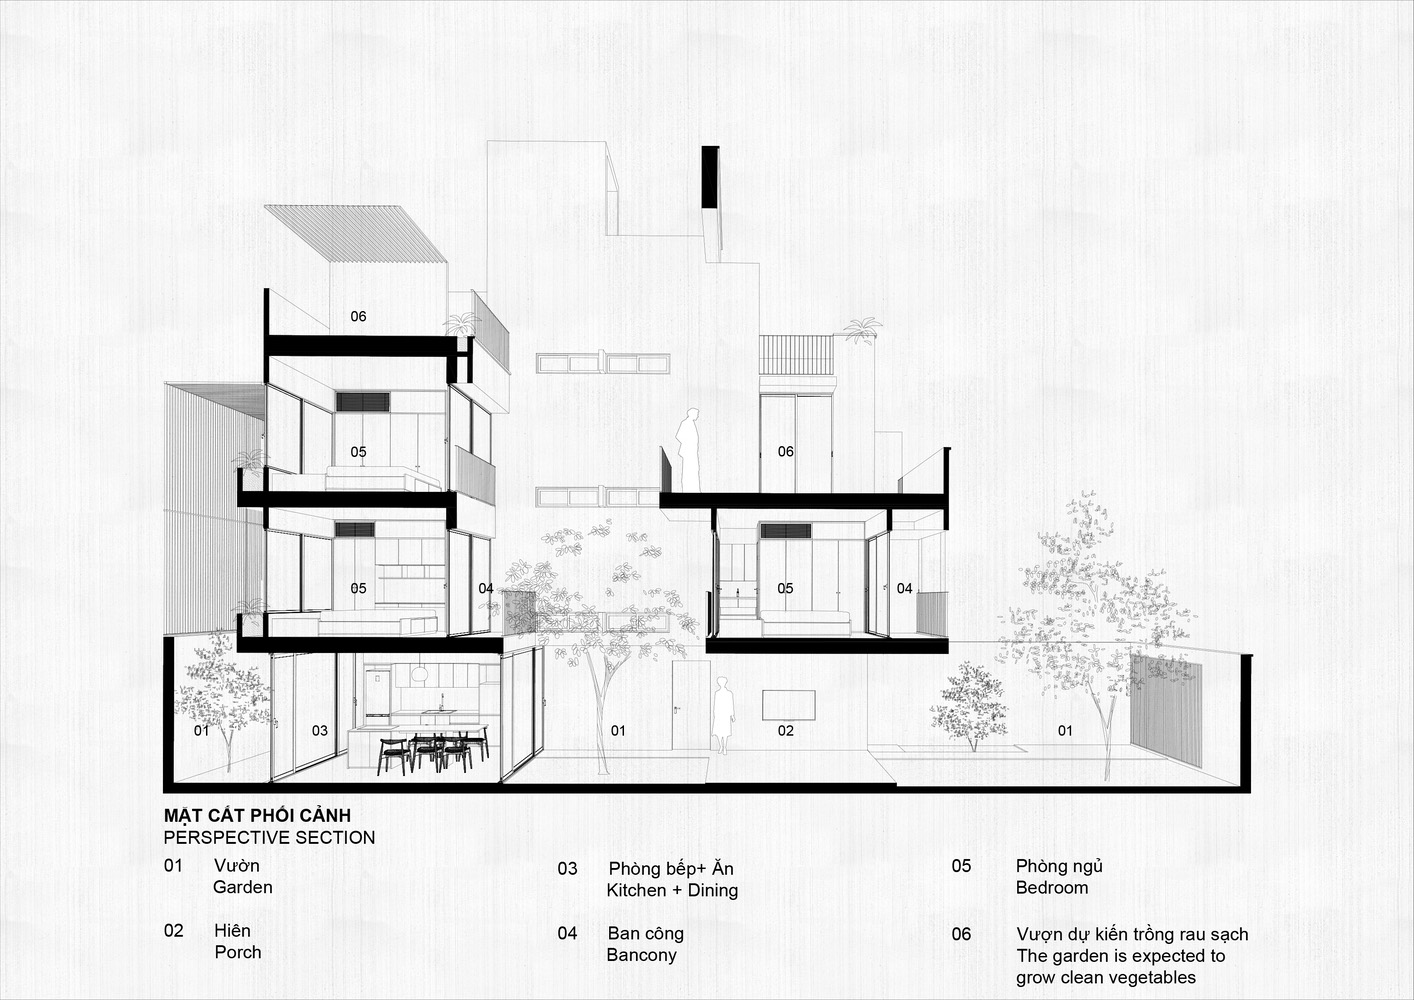 HH Studio,越南,別墅設計案例,別墅設計,204㎡,別墅裝修效果圖,庭院別墅,極簡主義,極簡風格別墅